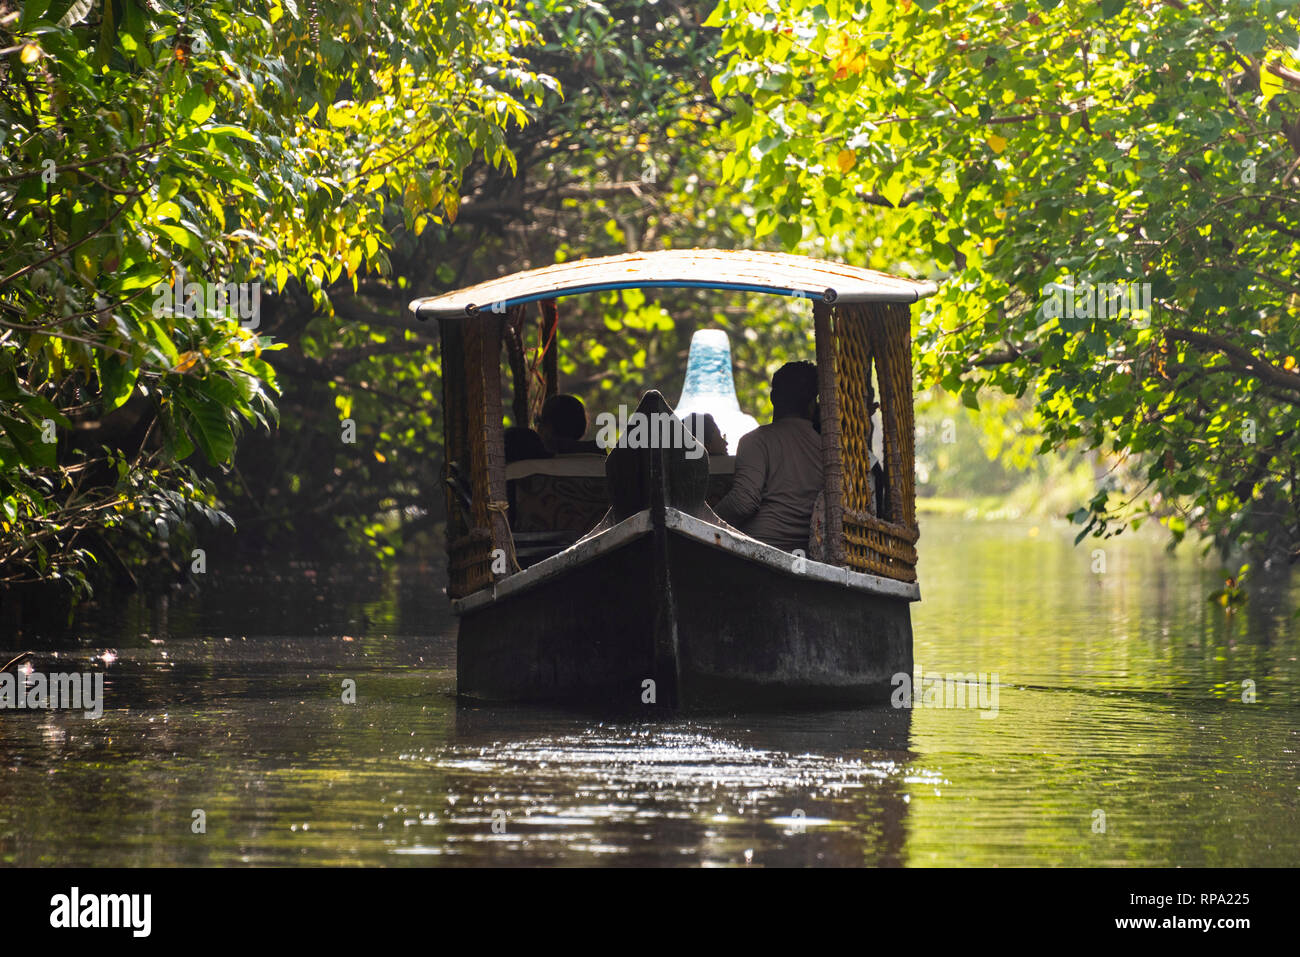 Une journée typique de croisière bateau flottant sur l'eau dormante Keralan lors d'une journée ensoleillée. Banque D'Images